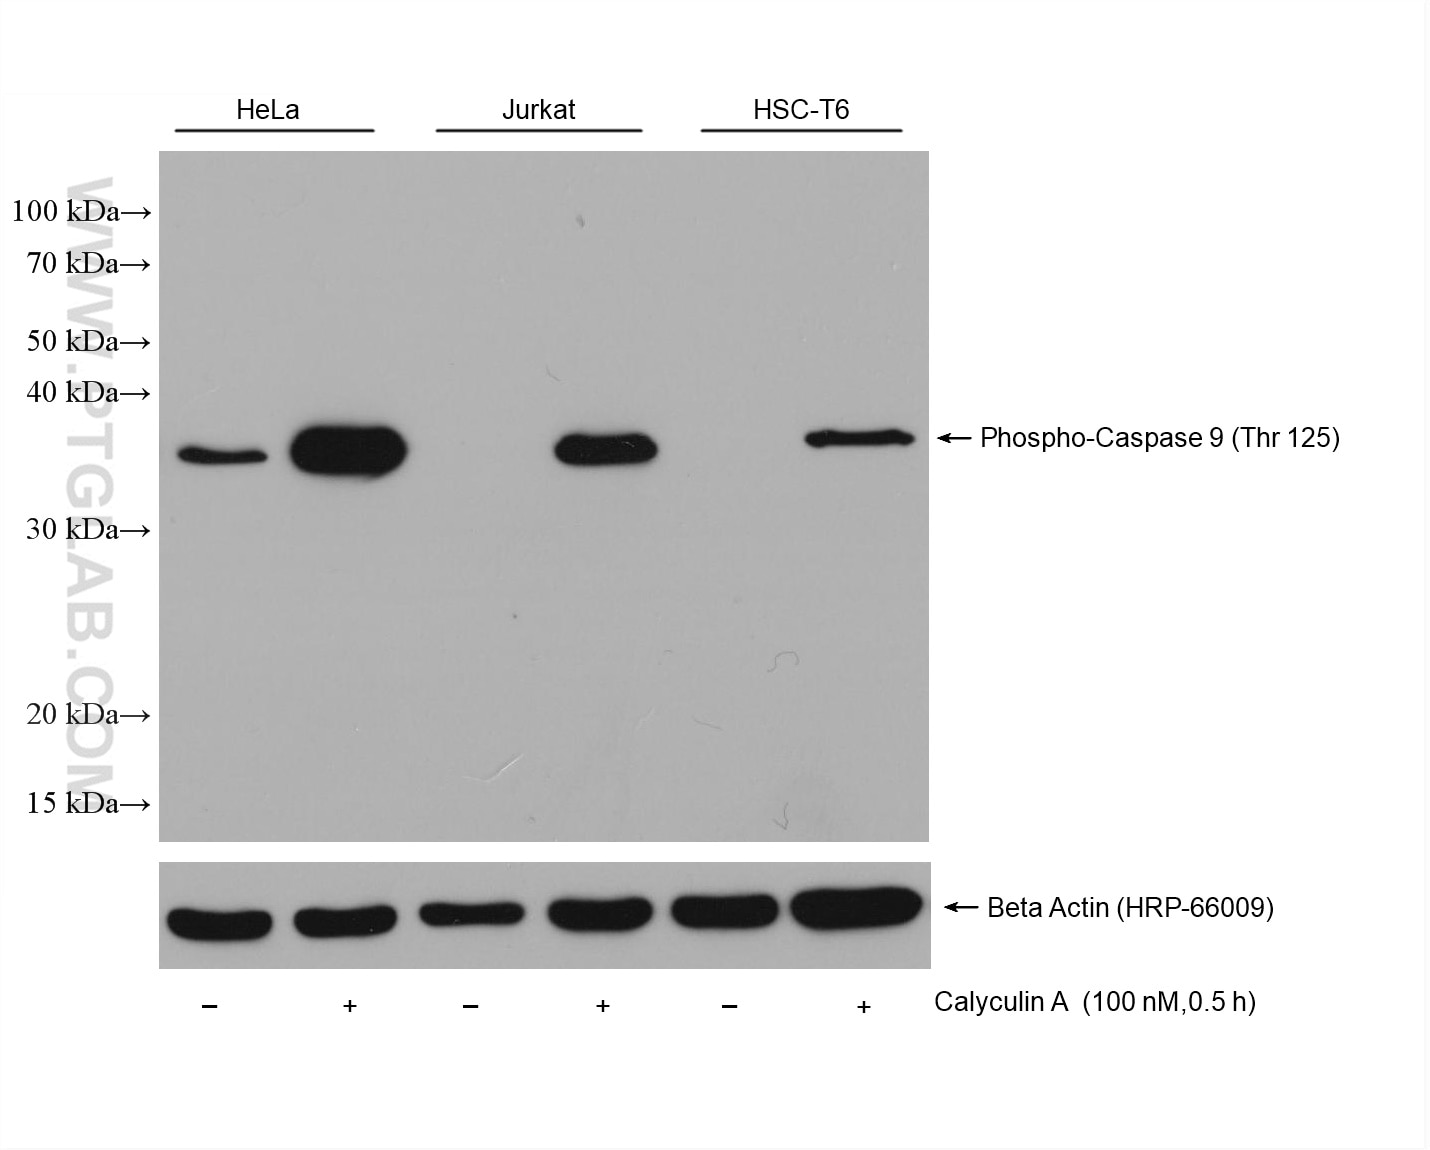 Phospho-Caspase 9 (Thr125)